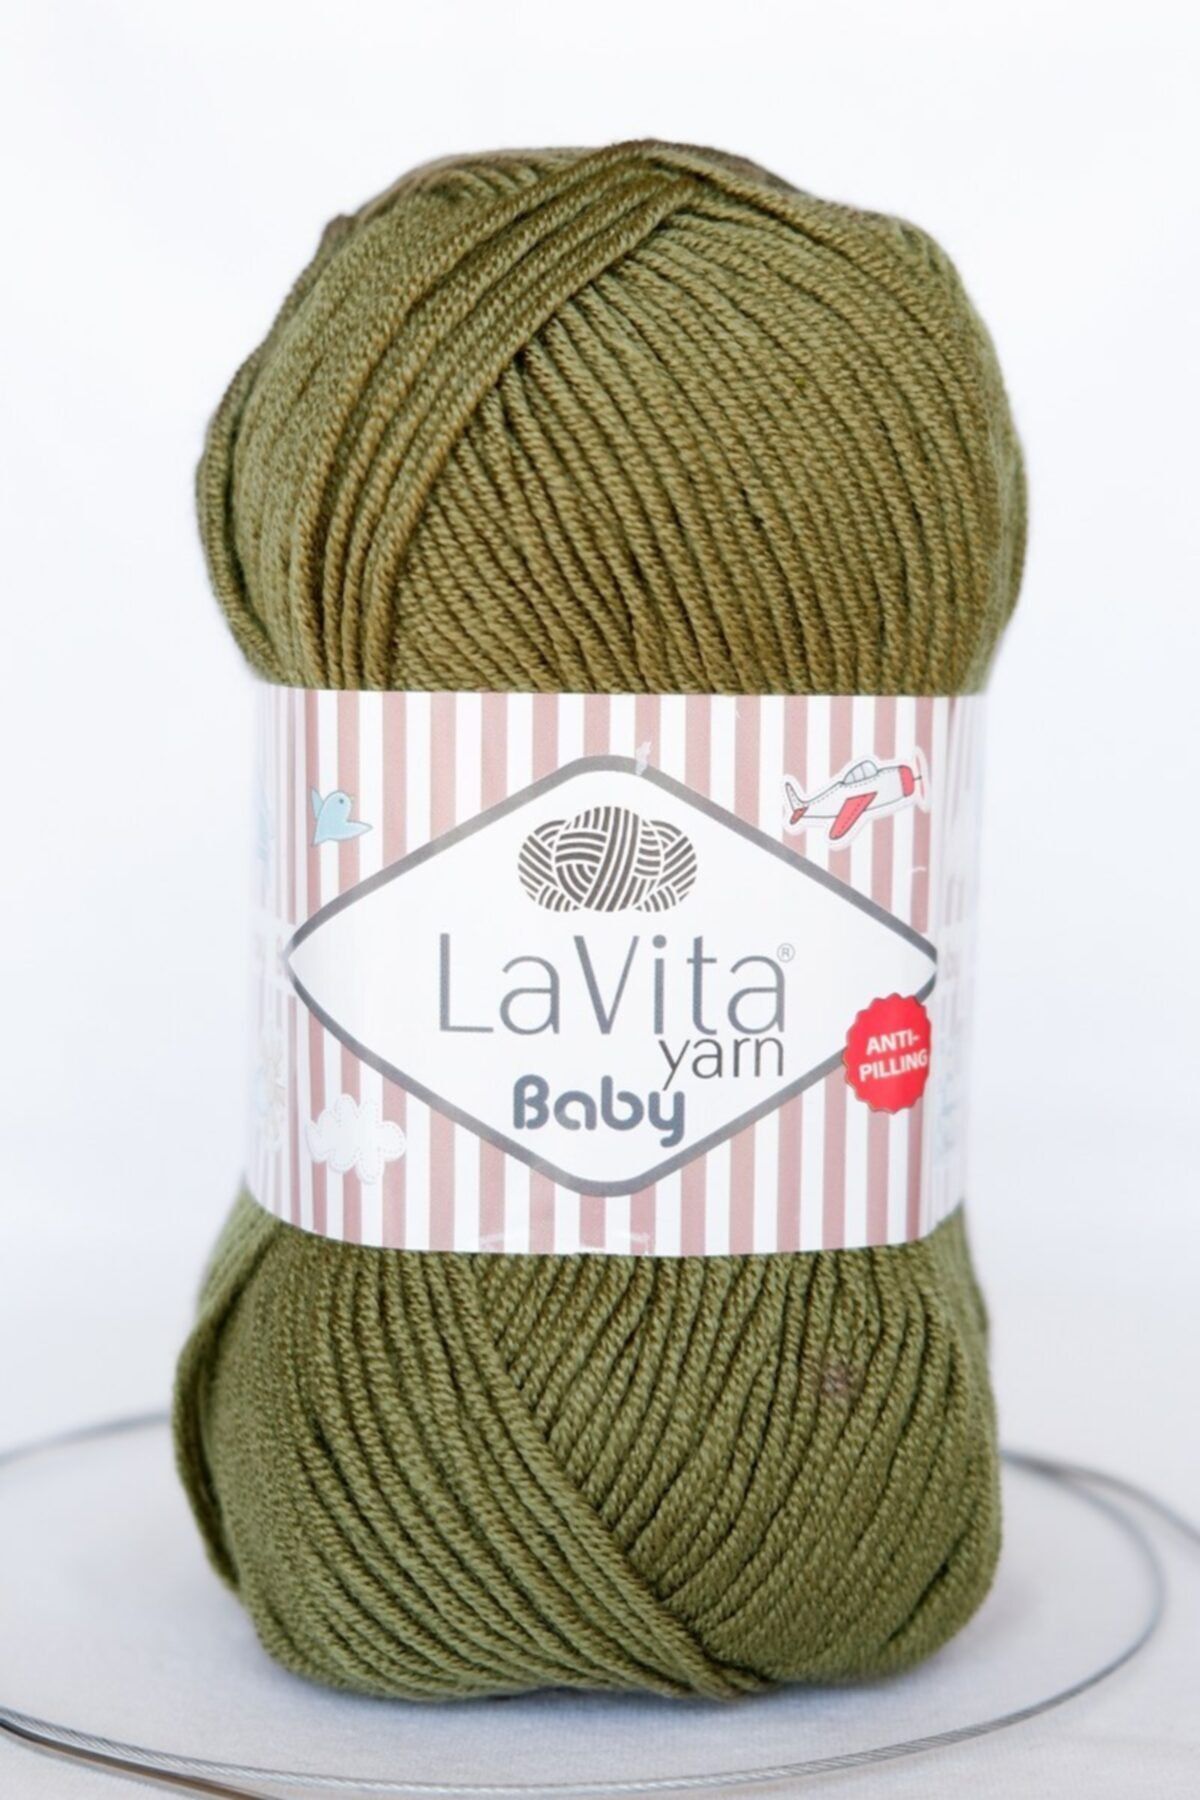 LaVita Yarn Baby El Örgü Ipligi, Taka Yarn (HAKİ-8143)